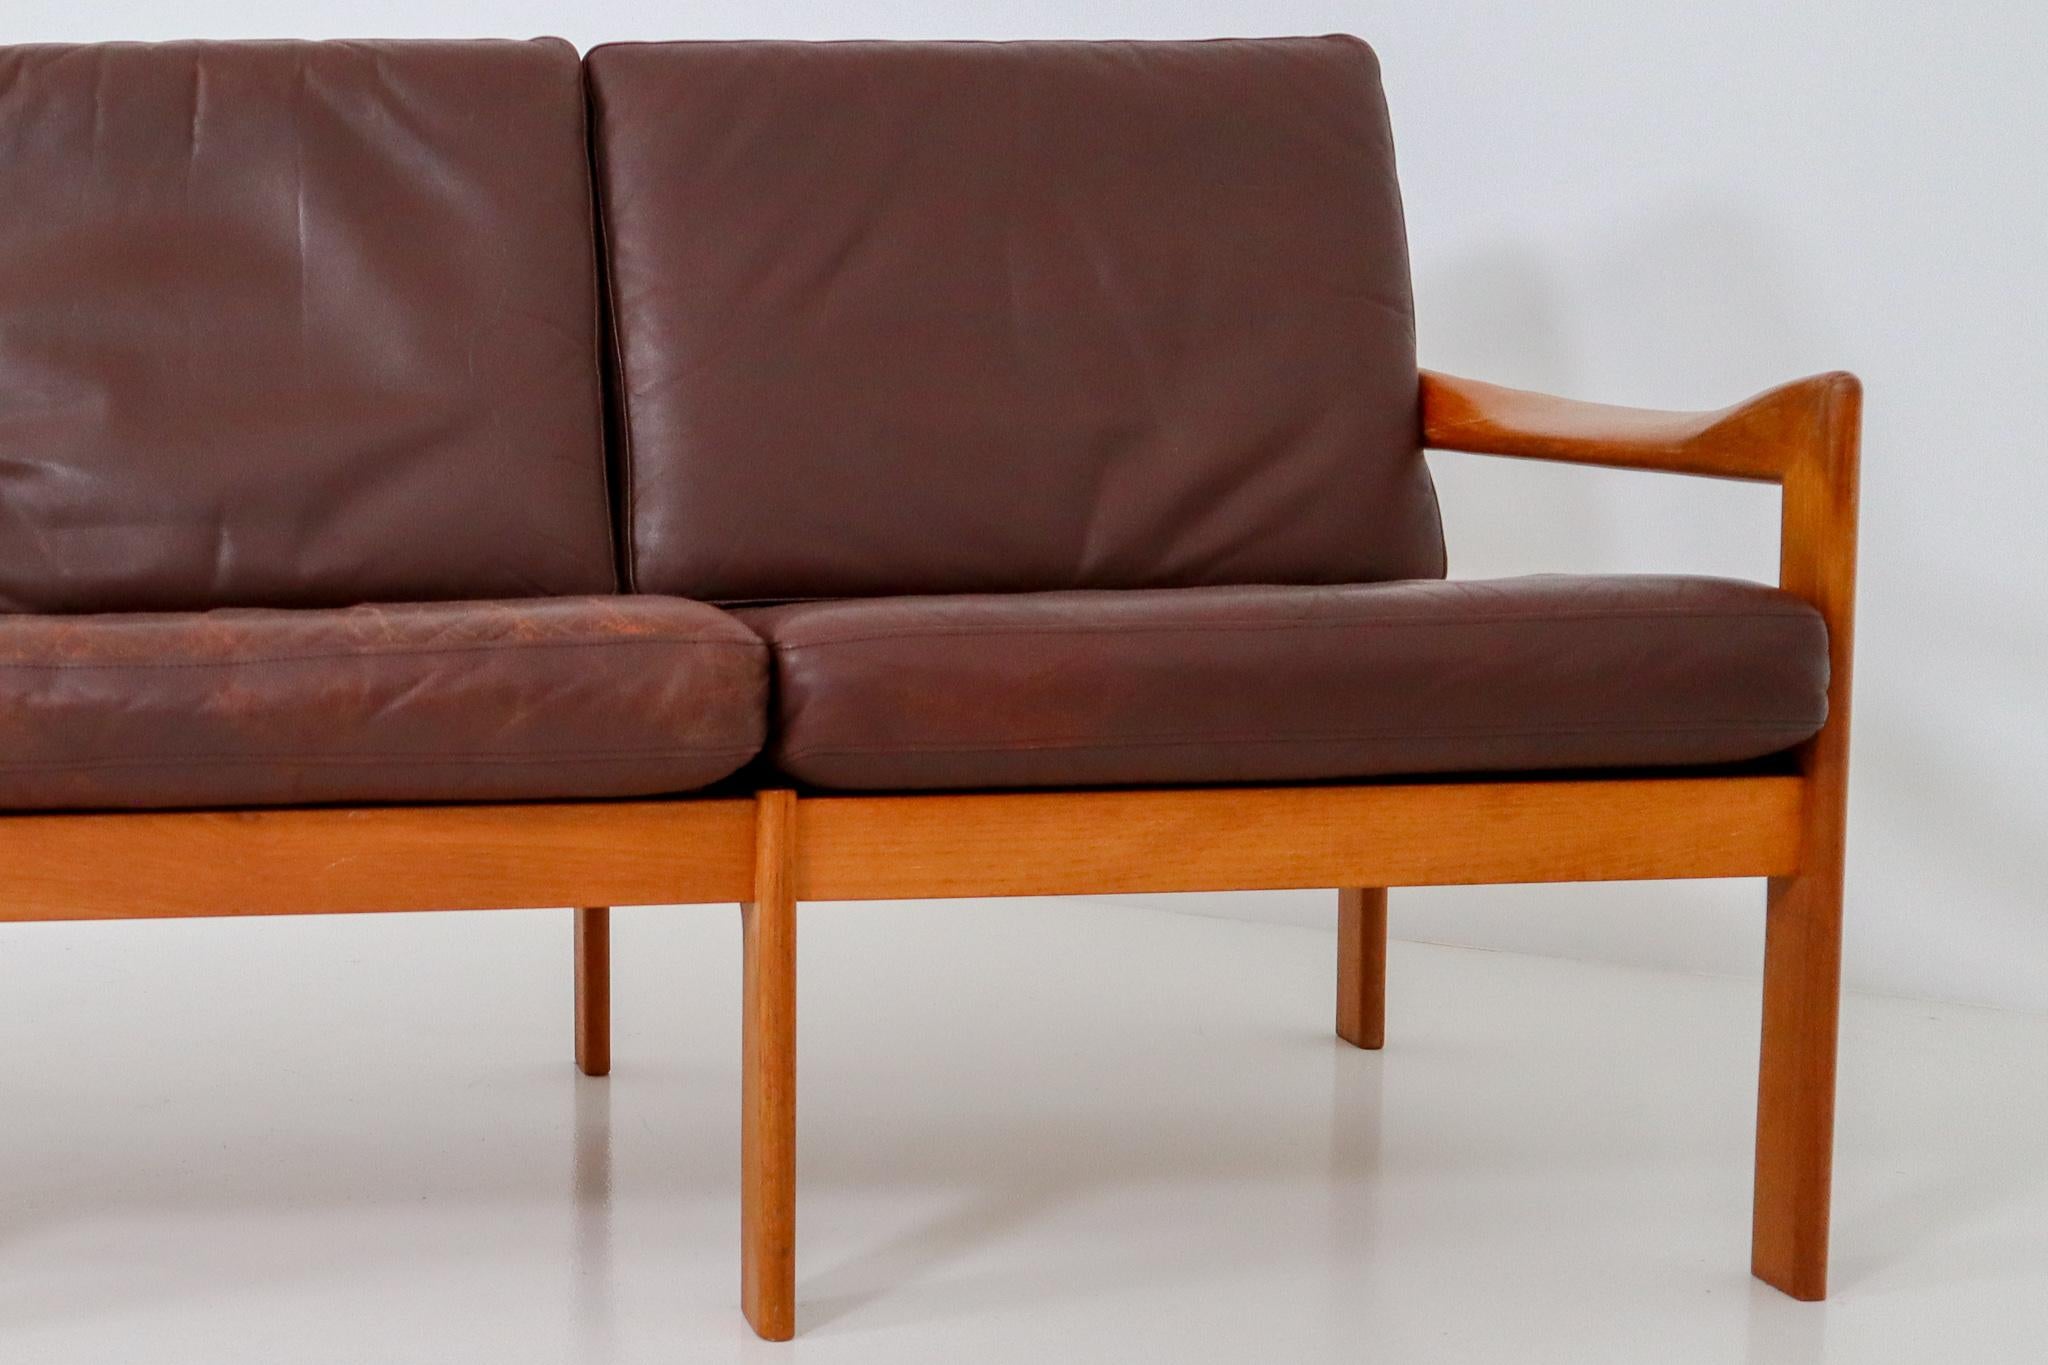 Mid-20th Century Illum Wikkelso Three-Seat Teak Sofa, Danish, 1960s, Produced by Eilersen